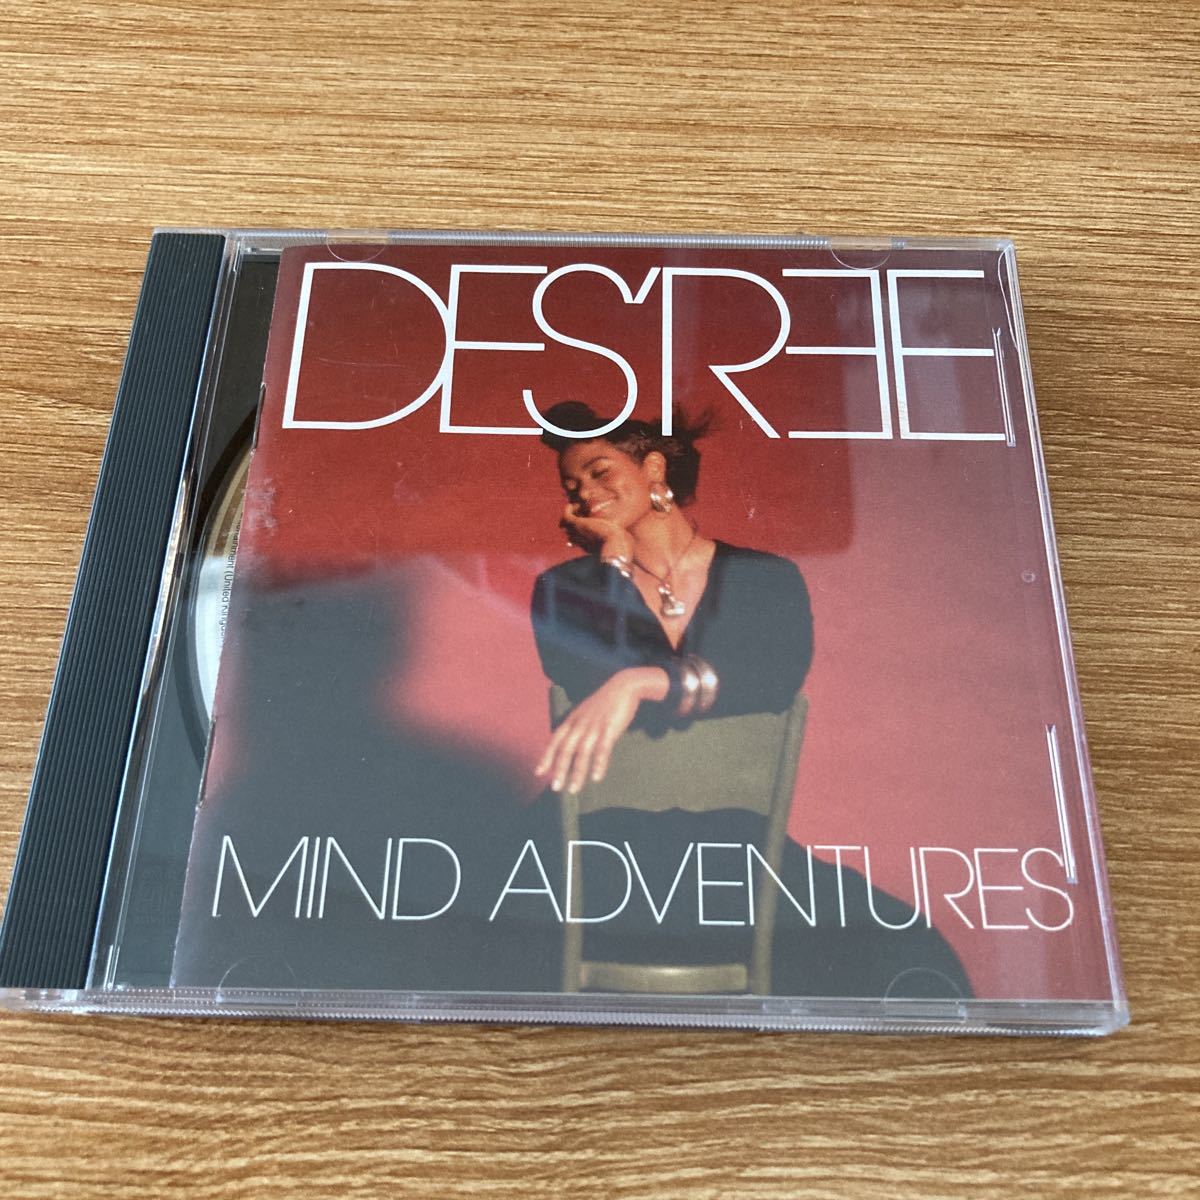 最終値下げ価格 ディズリー DES’REE Mind adventures マインドアドベンチャーズ アルバム CDの画像1